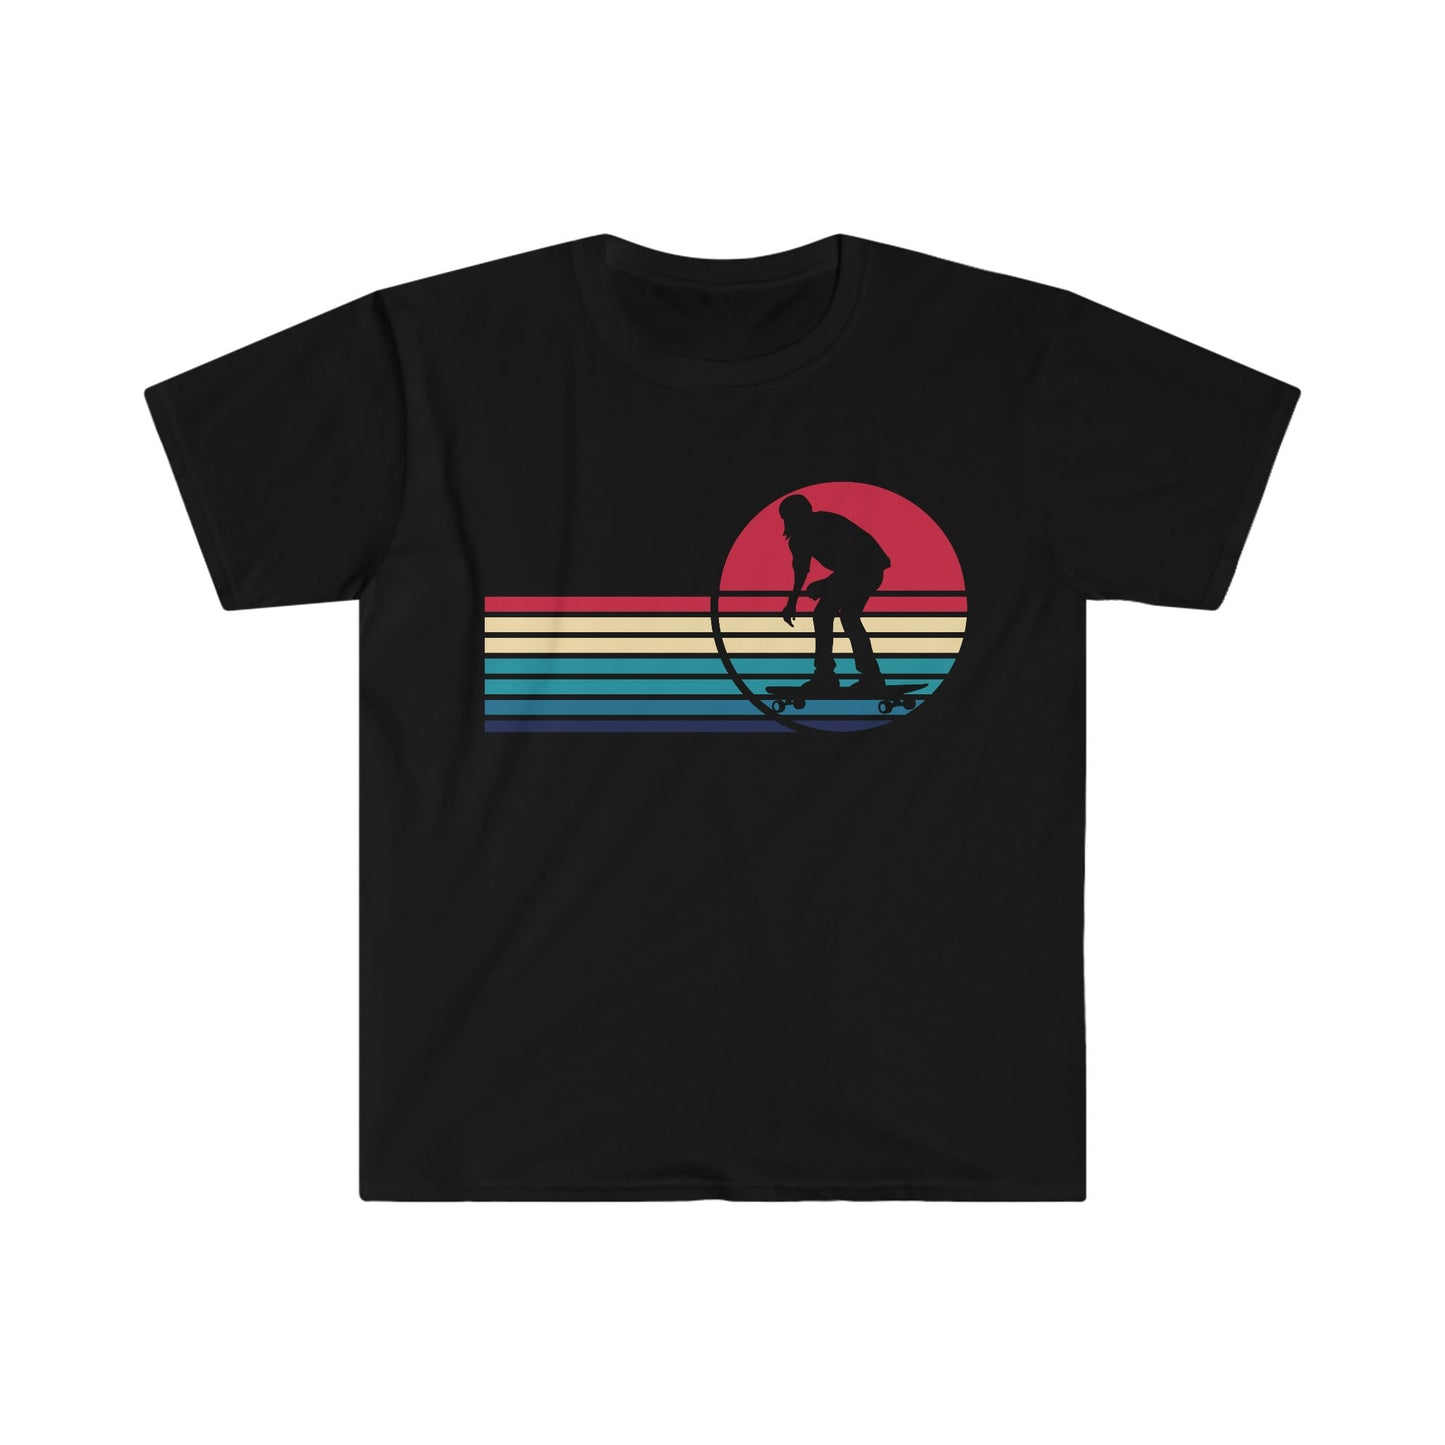 Unisex Softstyle T-Shirt - Skateboarding